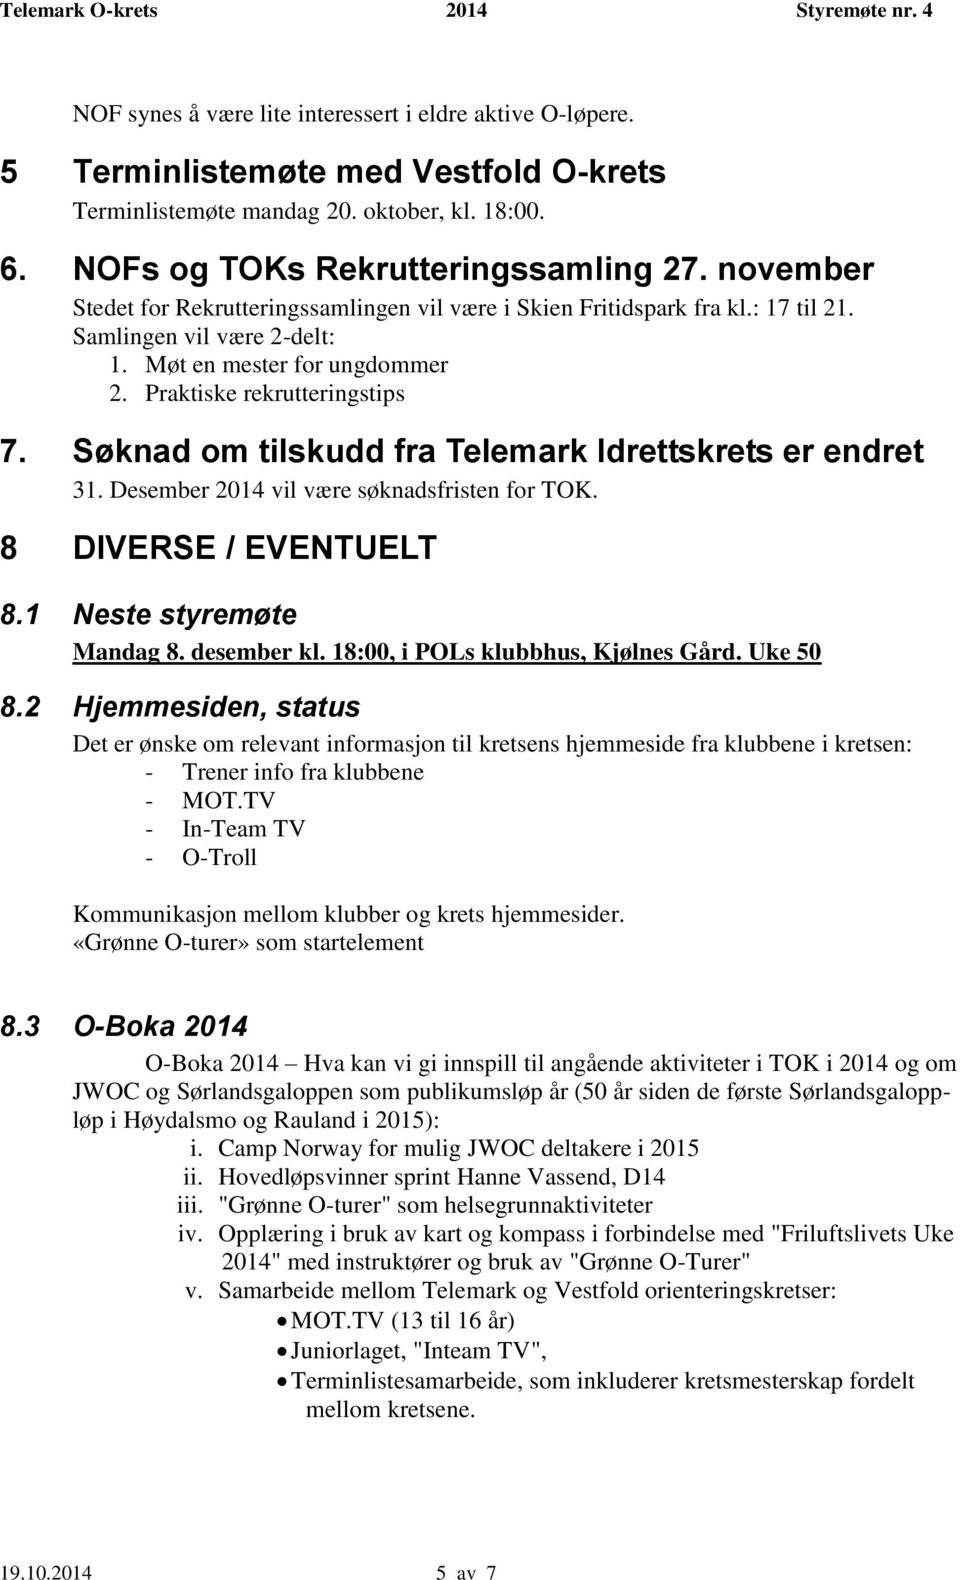 Søknad om tilskudd fra Telemark Idrettskrets er endret 31. Desember 2014 vil være søknadsfristen for TOK. 8 DIVERSE / EVENTUELT 8.1 Neste styremøte Mandag 8. desember kl.